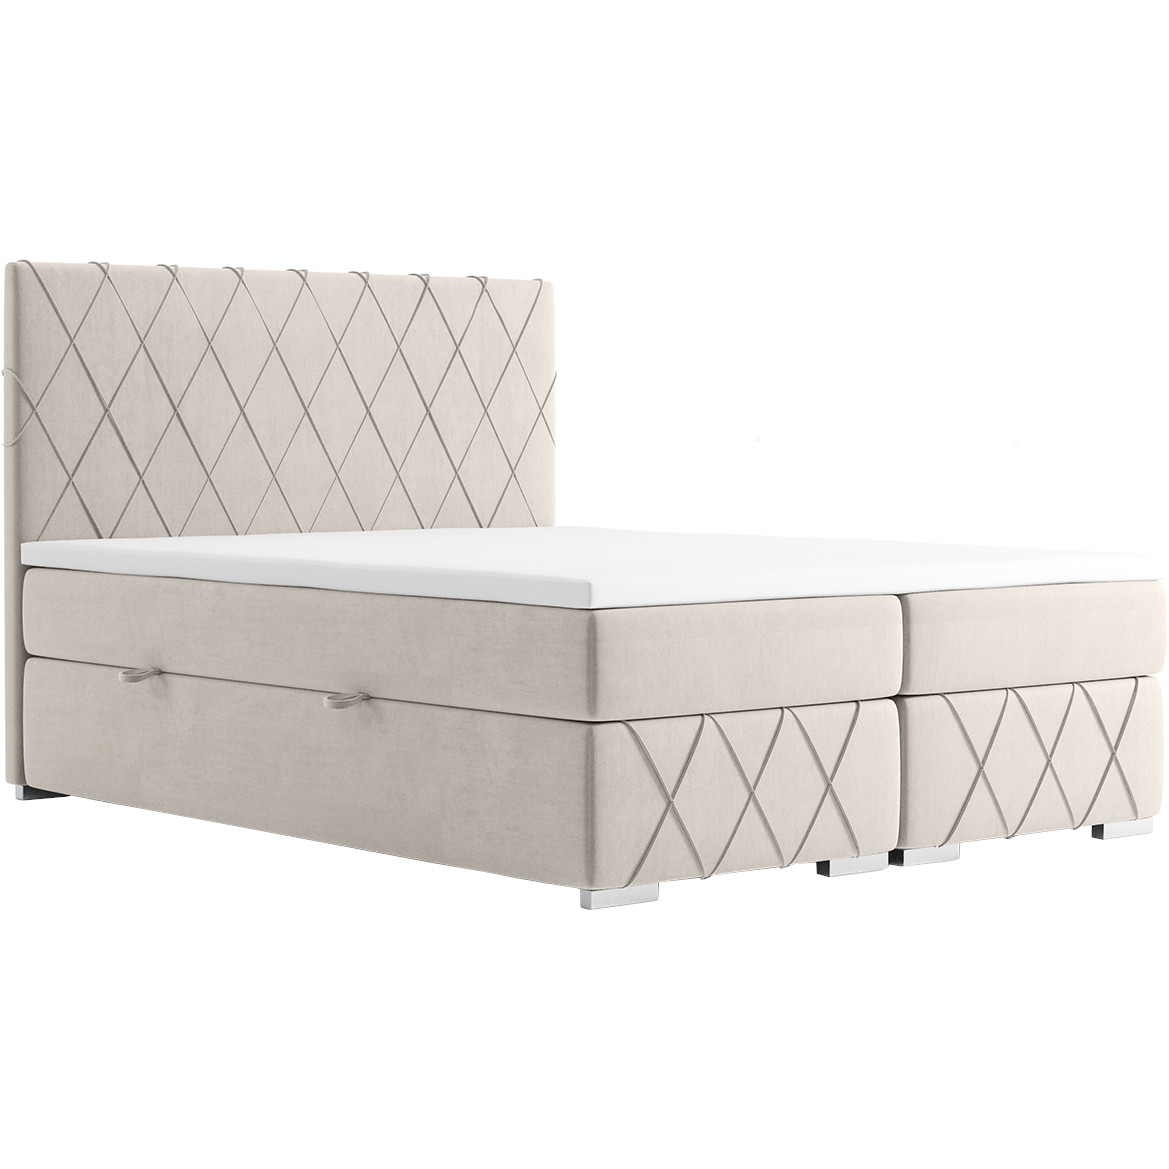 Upholstered bed NINA 140x200 magic velvet 2250